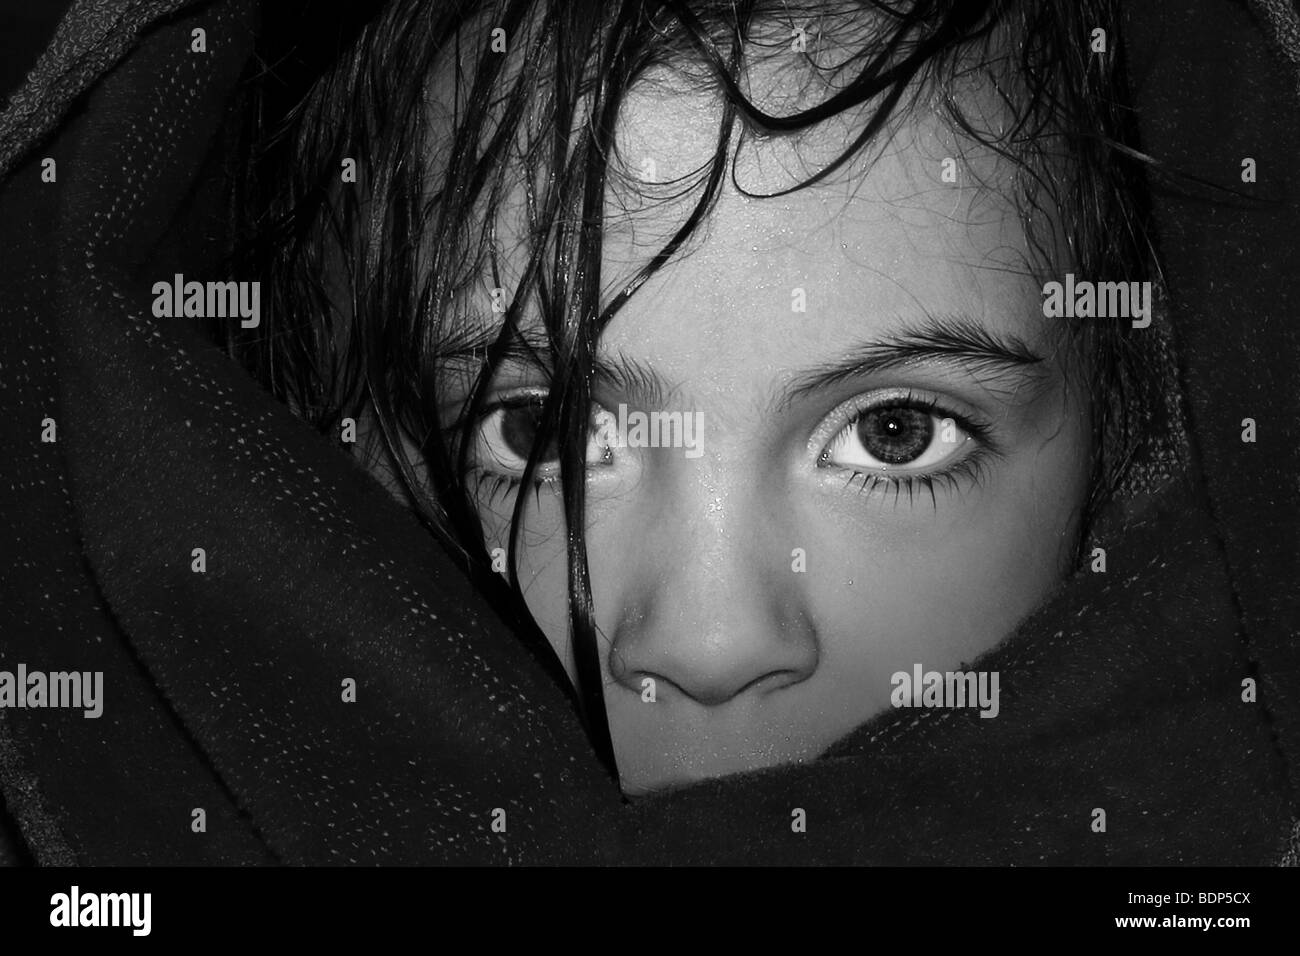 Schwarz / weiß-Bild von einem weiblichen Kind eingewickelt in eine Decke schauen mit großen Augen und nasse Haar... Stockfoto